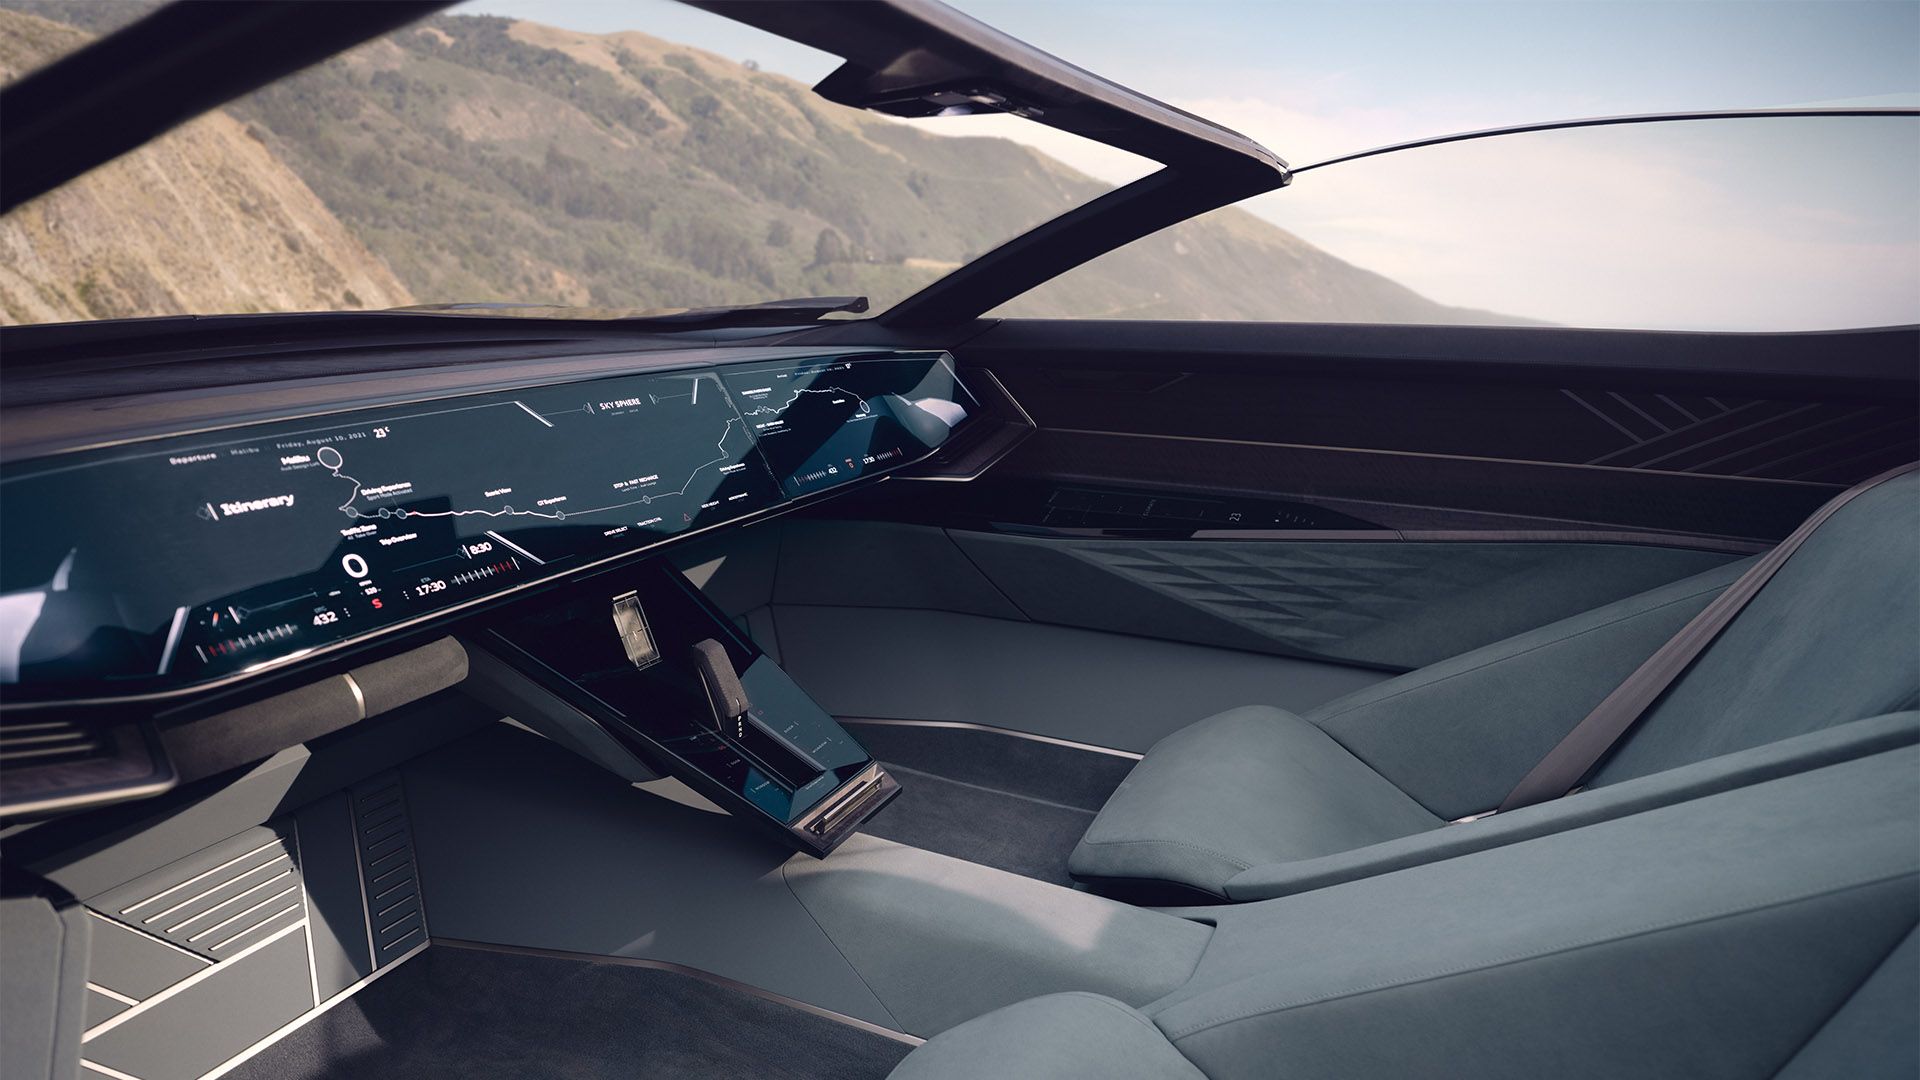 Vista lateral de la cabina del Audi skysphere concept en el modo "Grand Turismo".